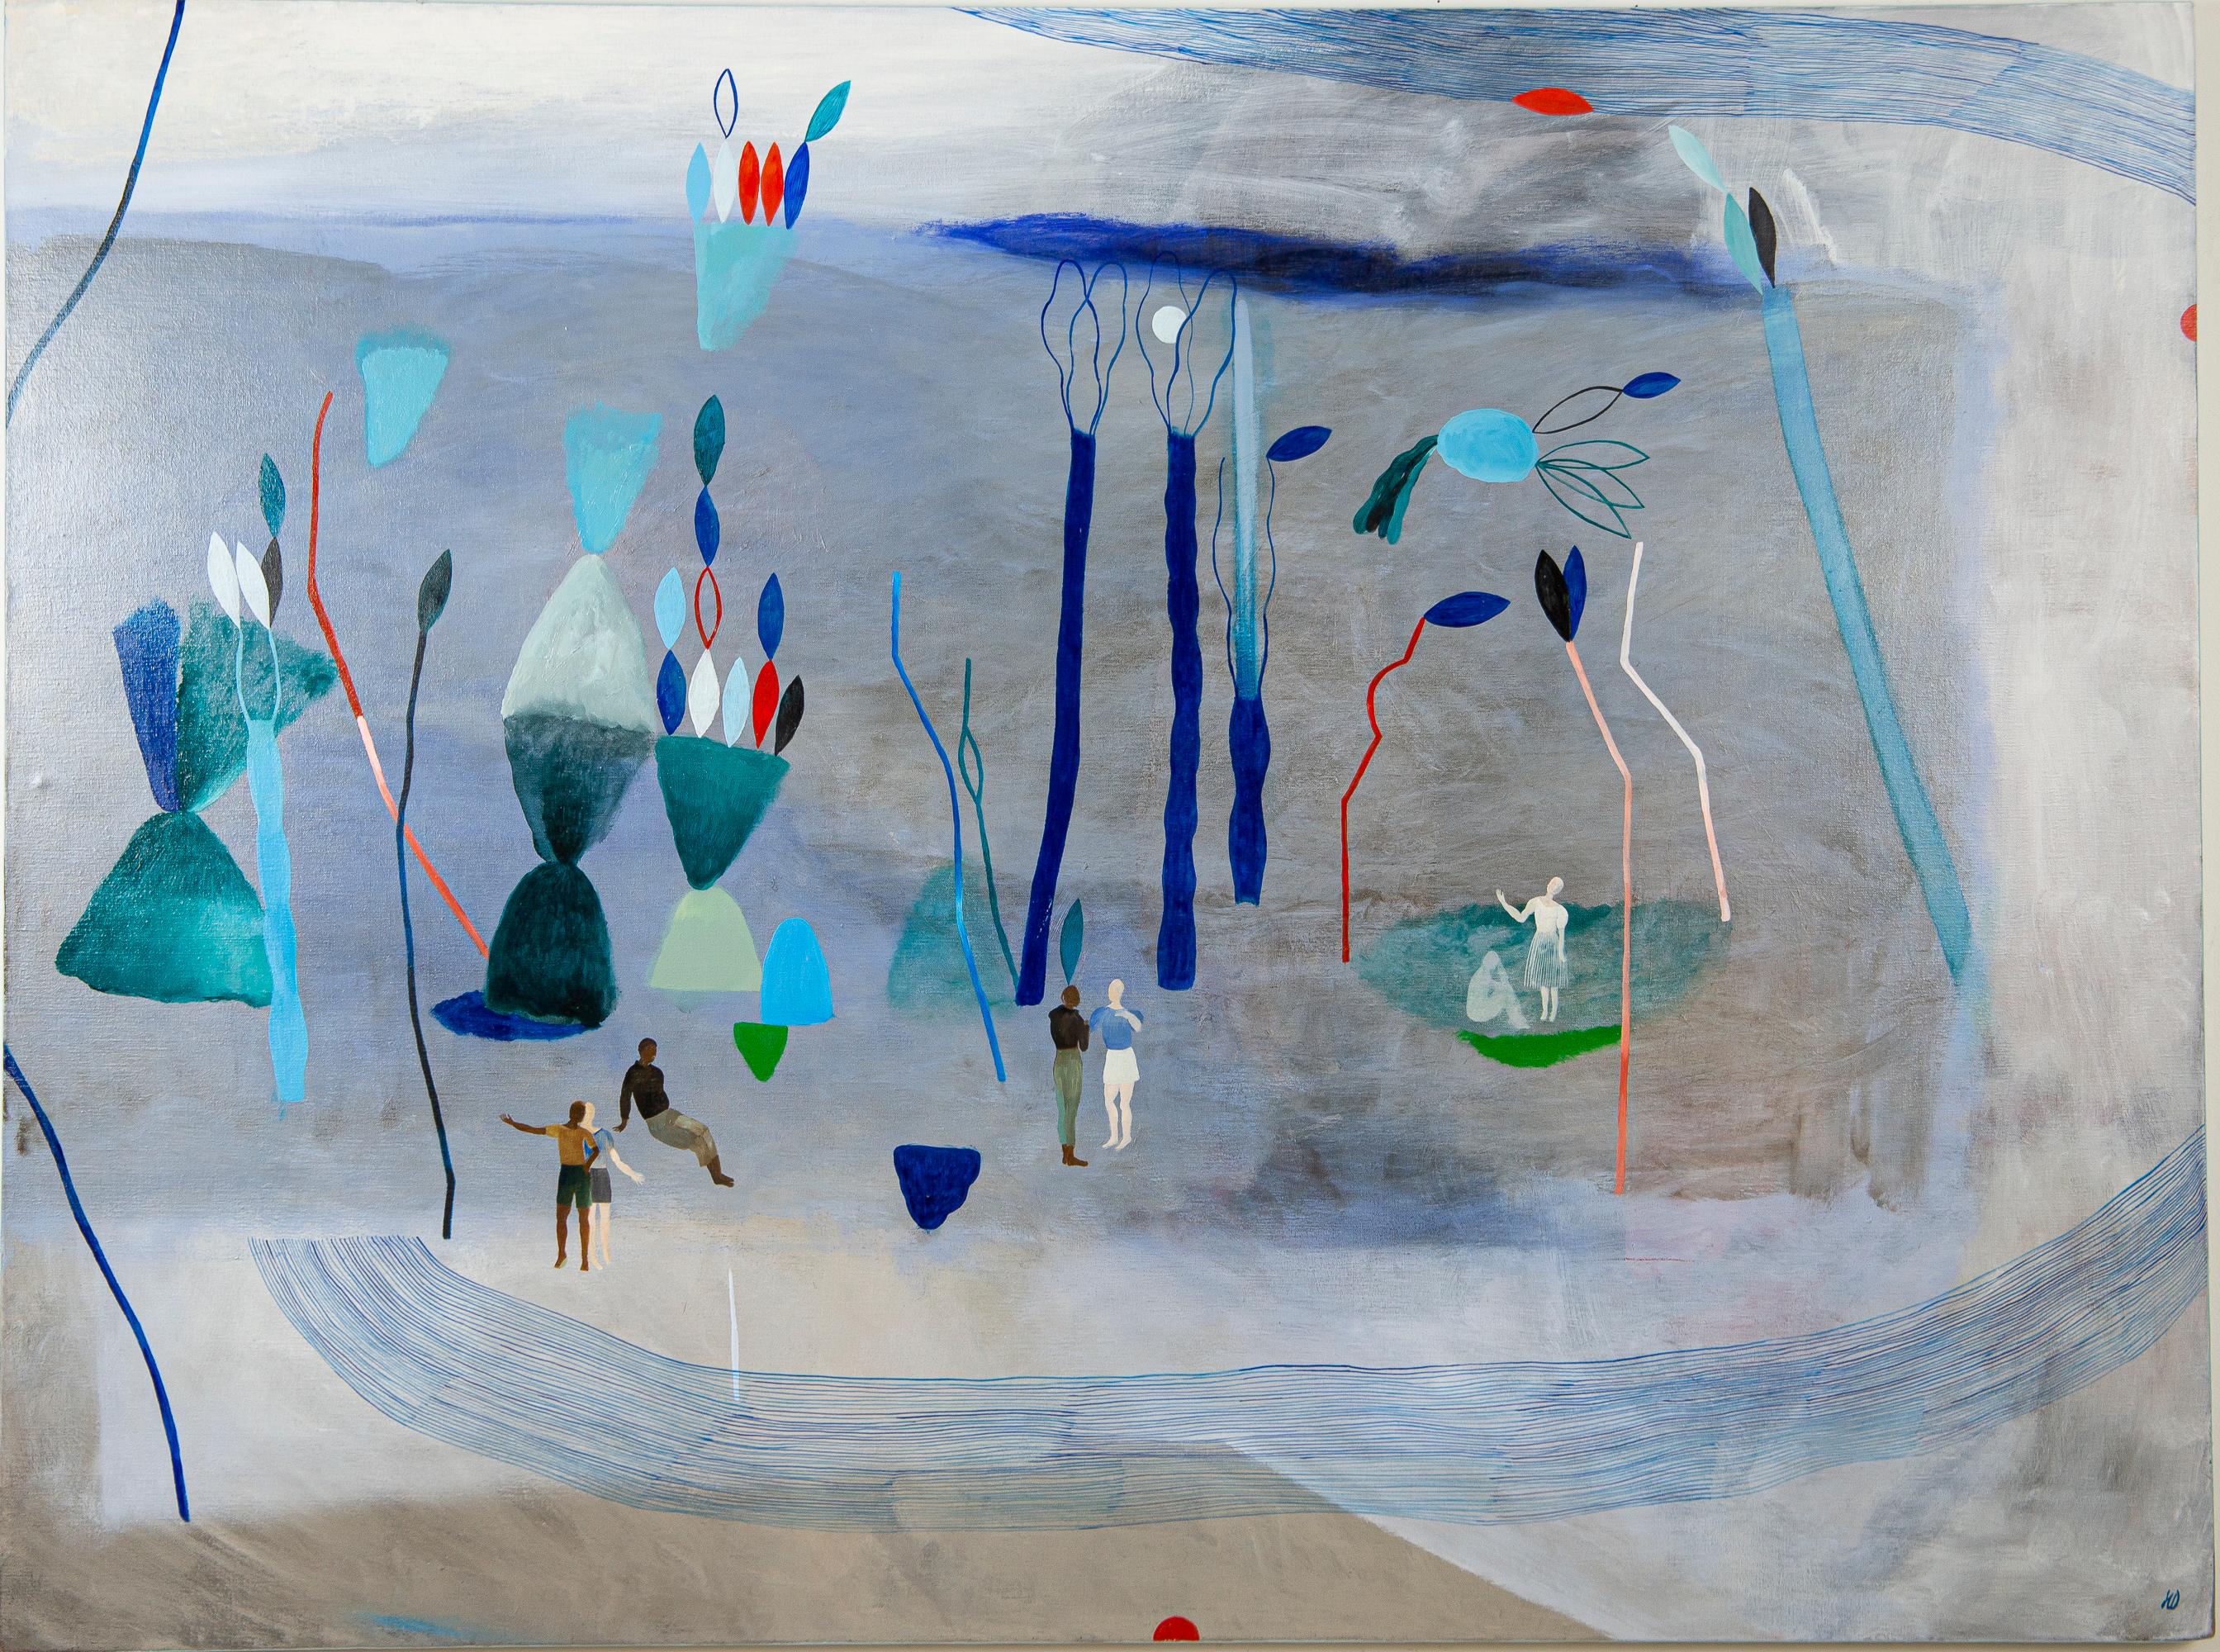 Do not retrace our steps #1 - Hélène Duclos, 21st Century, Contemporary art blue